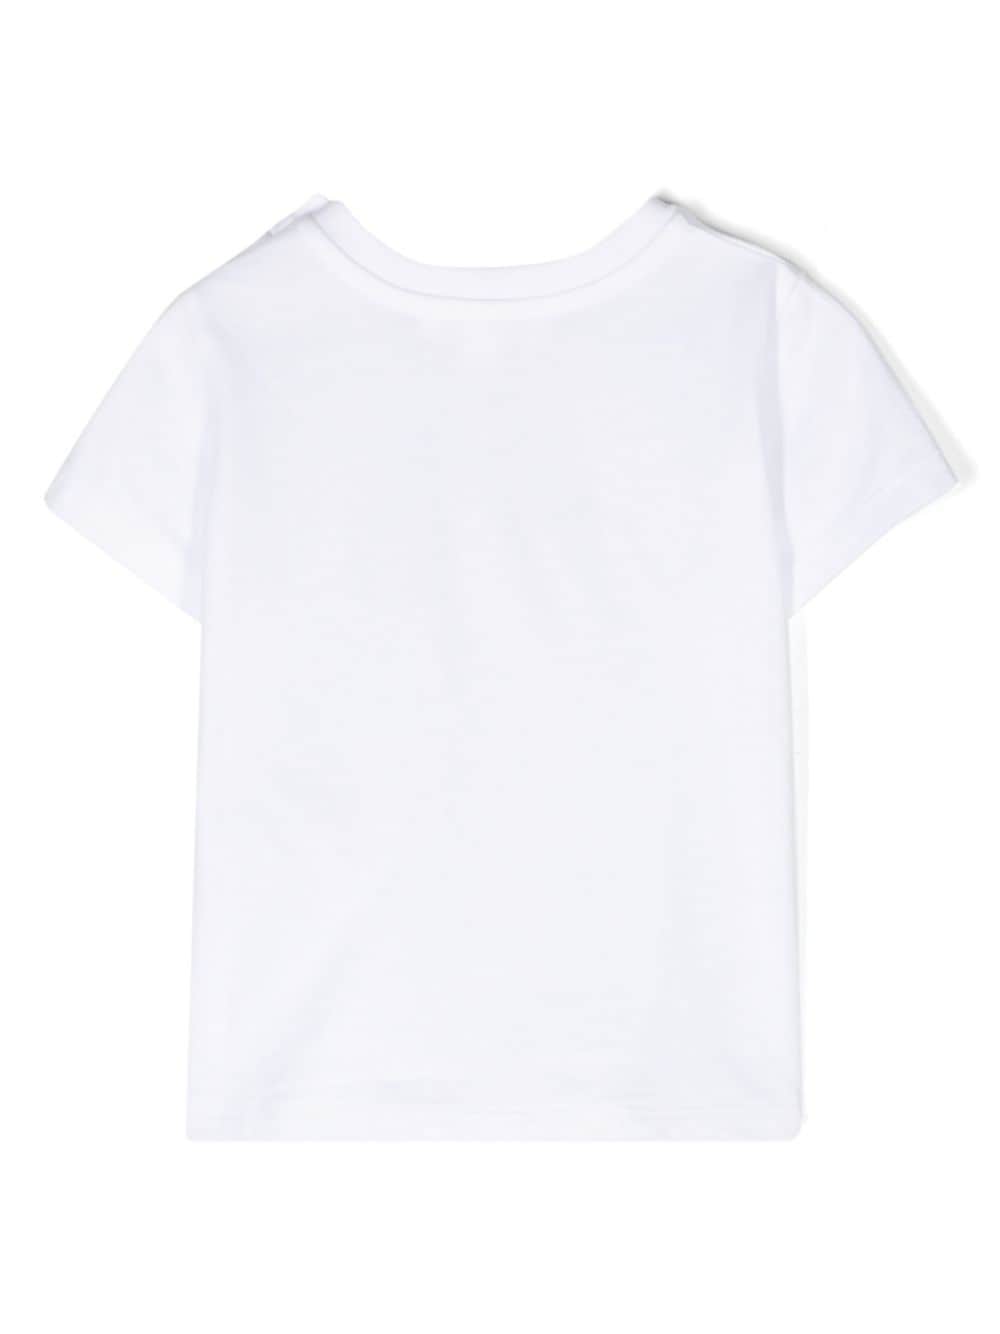 T-shirt blanc nouveau-né